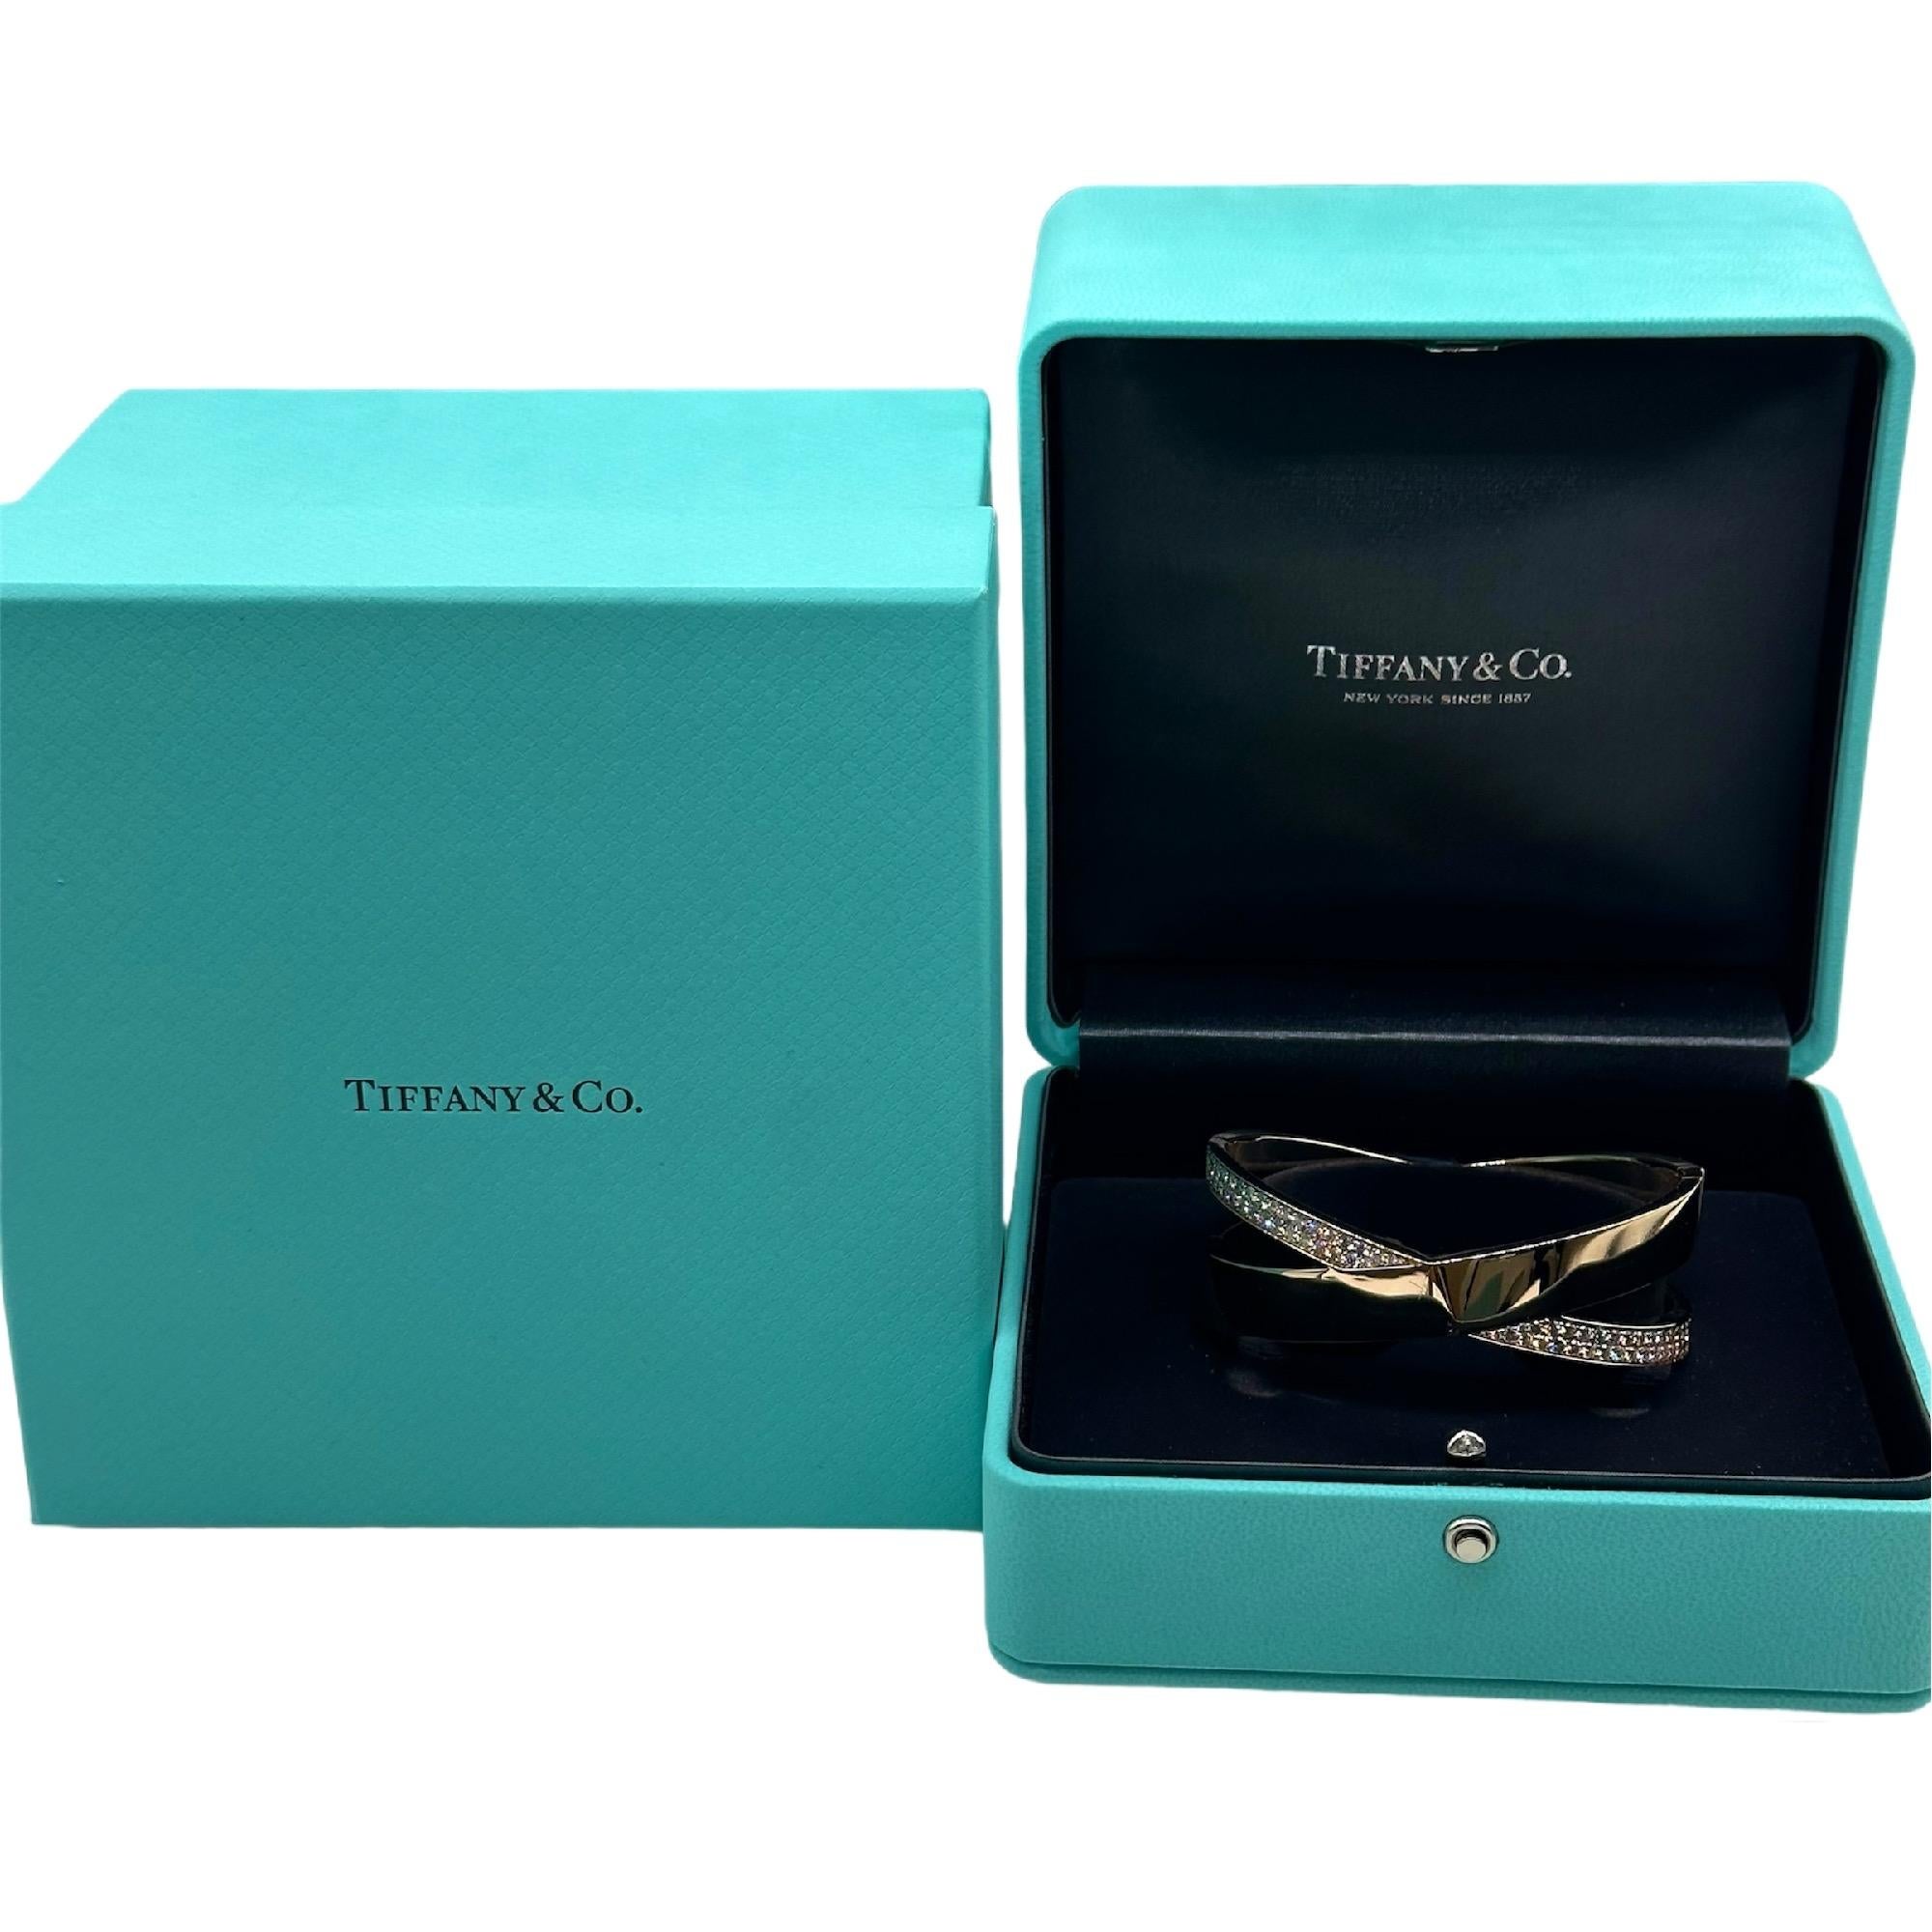 Tiffany & Co. Bracelet Atlas Wide X Diamond Bangle
Le style :  Bracelet 
Métal :   Or rose 18kt
Taille :  Moyen
Les diamants :  66 diamants ronds Brilliante 2.27 tcw
Mesures :  1' pouce de large - 6,5' de circonférence intérieure mesurée
Hallmark : 